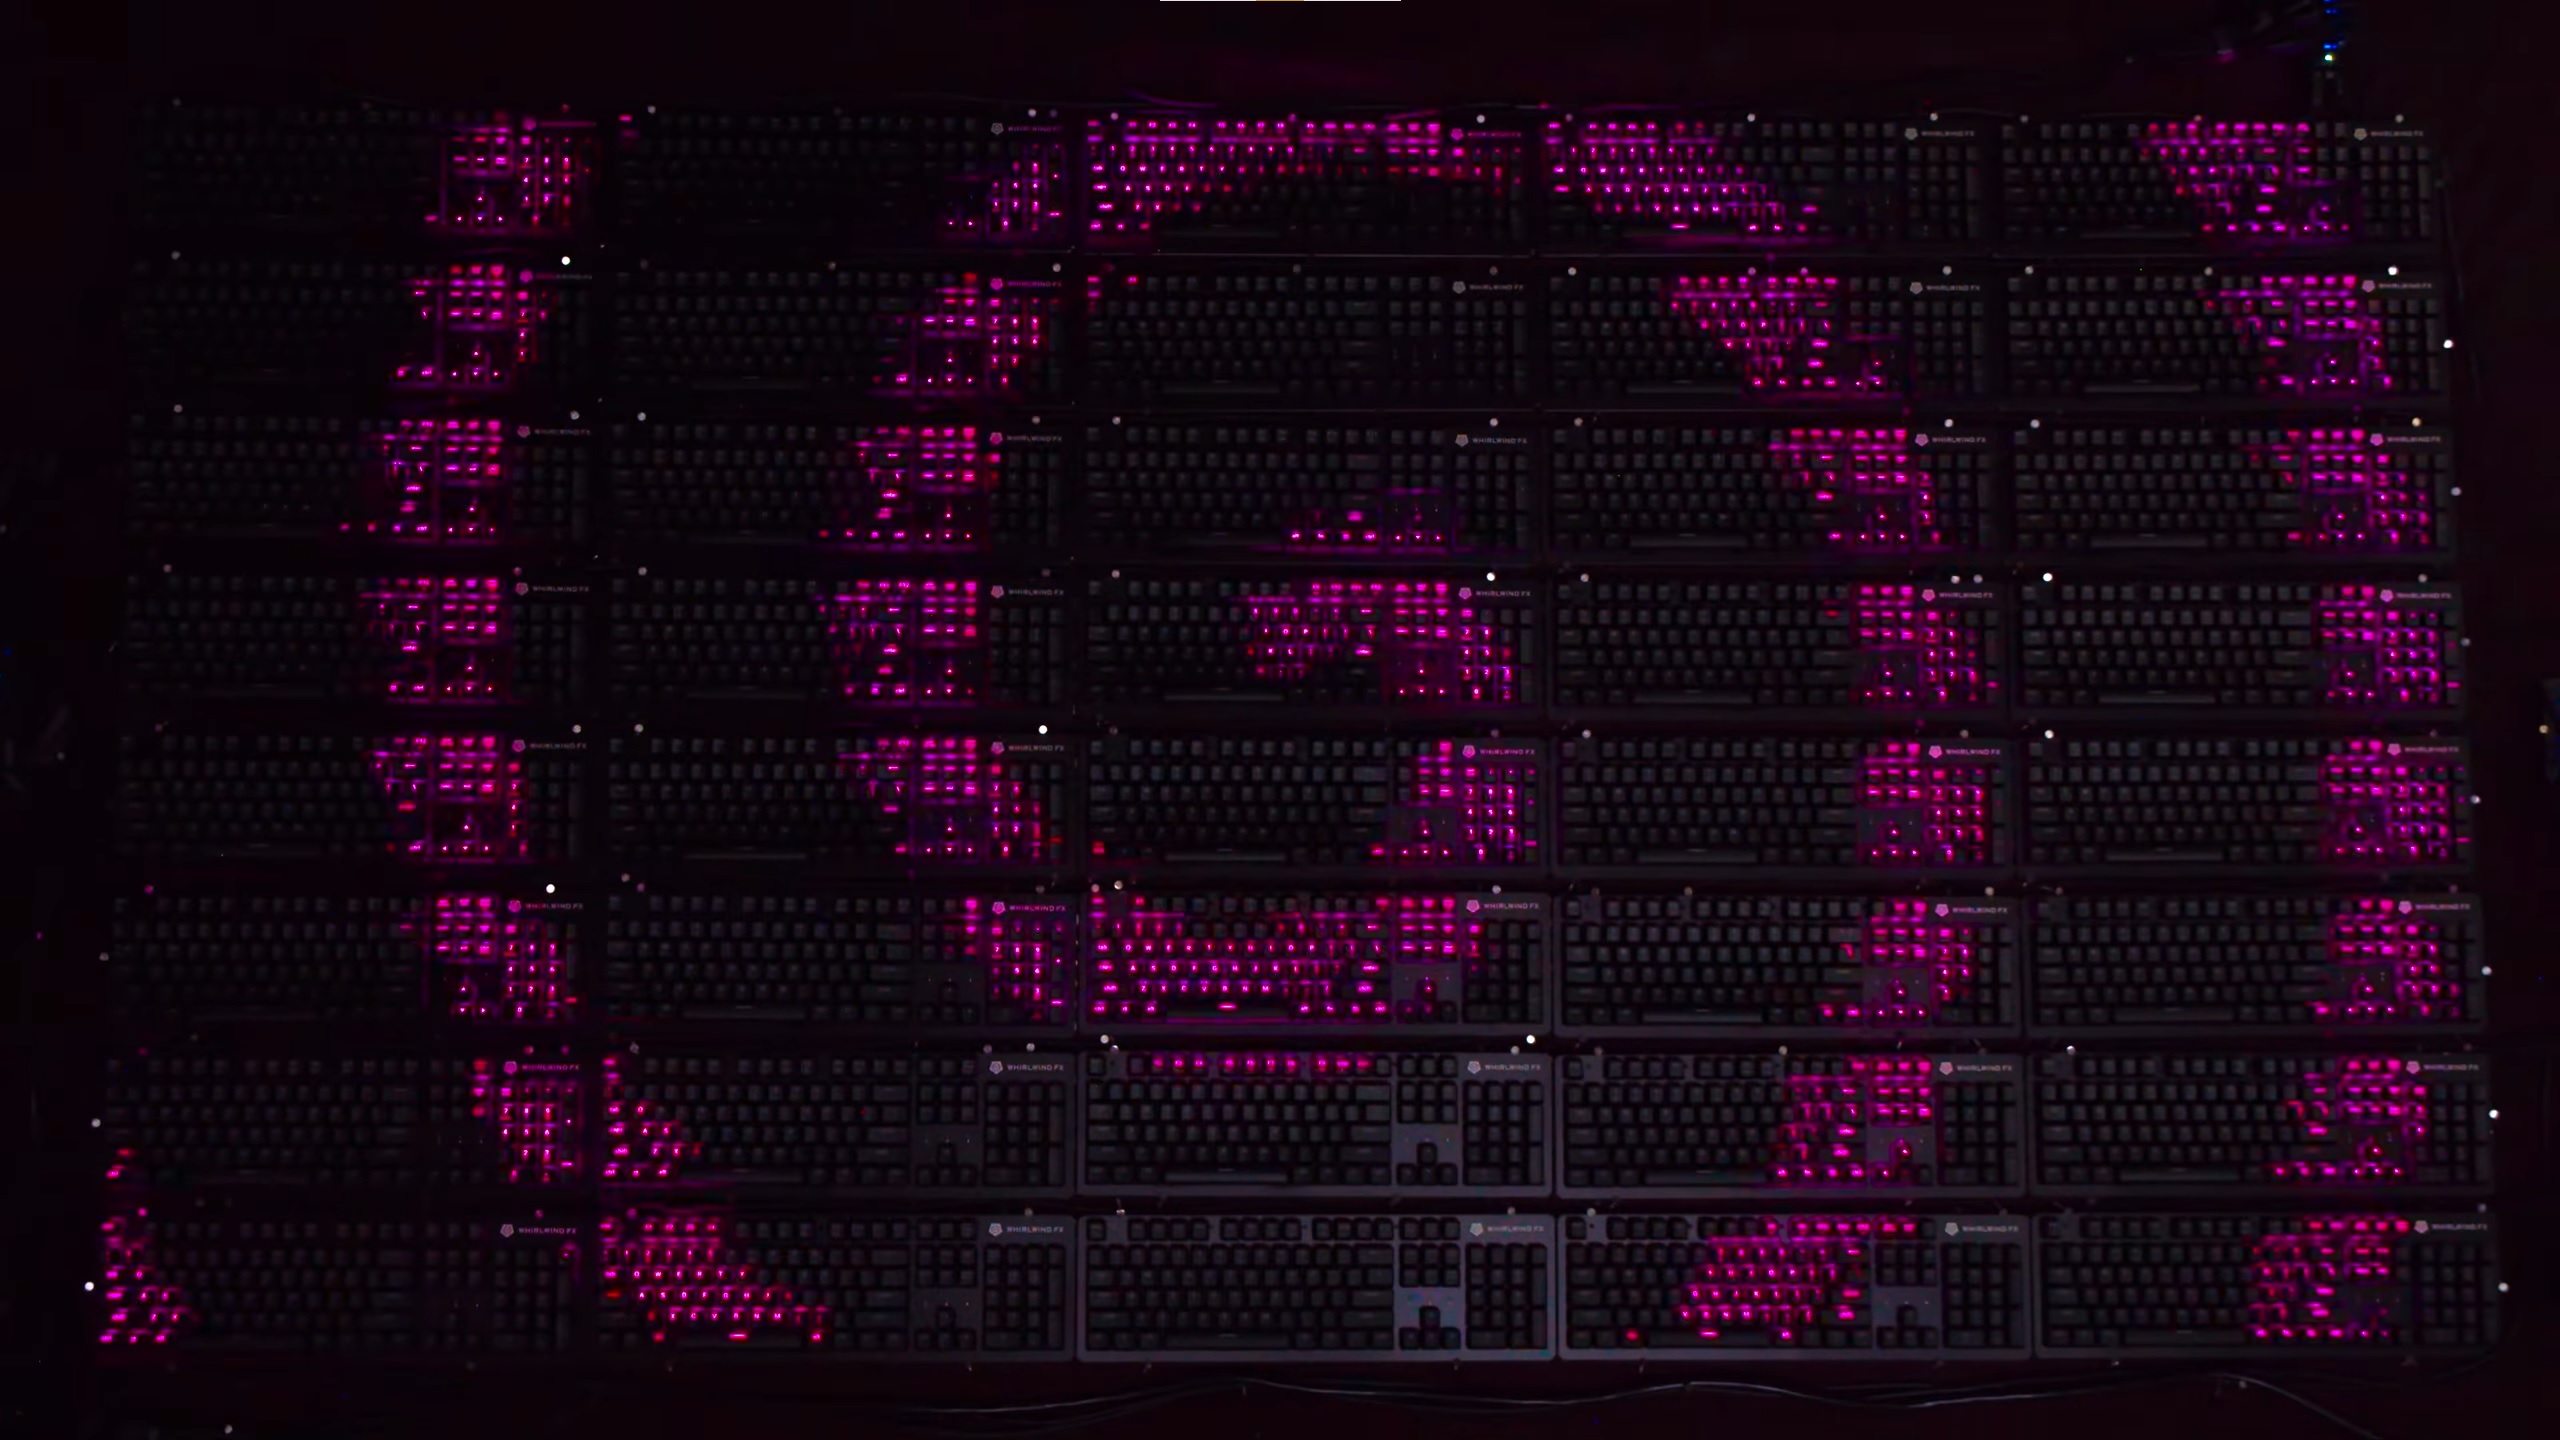 Voilà à quoi ressemble un écran géant composé uniquement... de claviers LED RGB